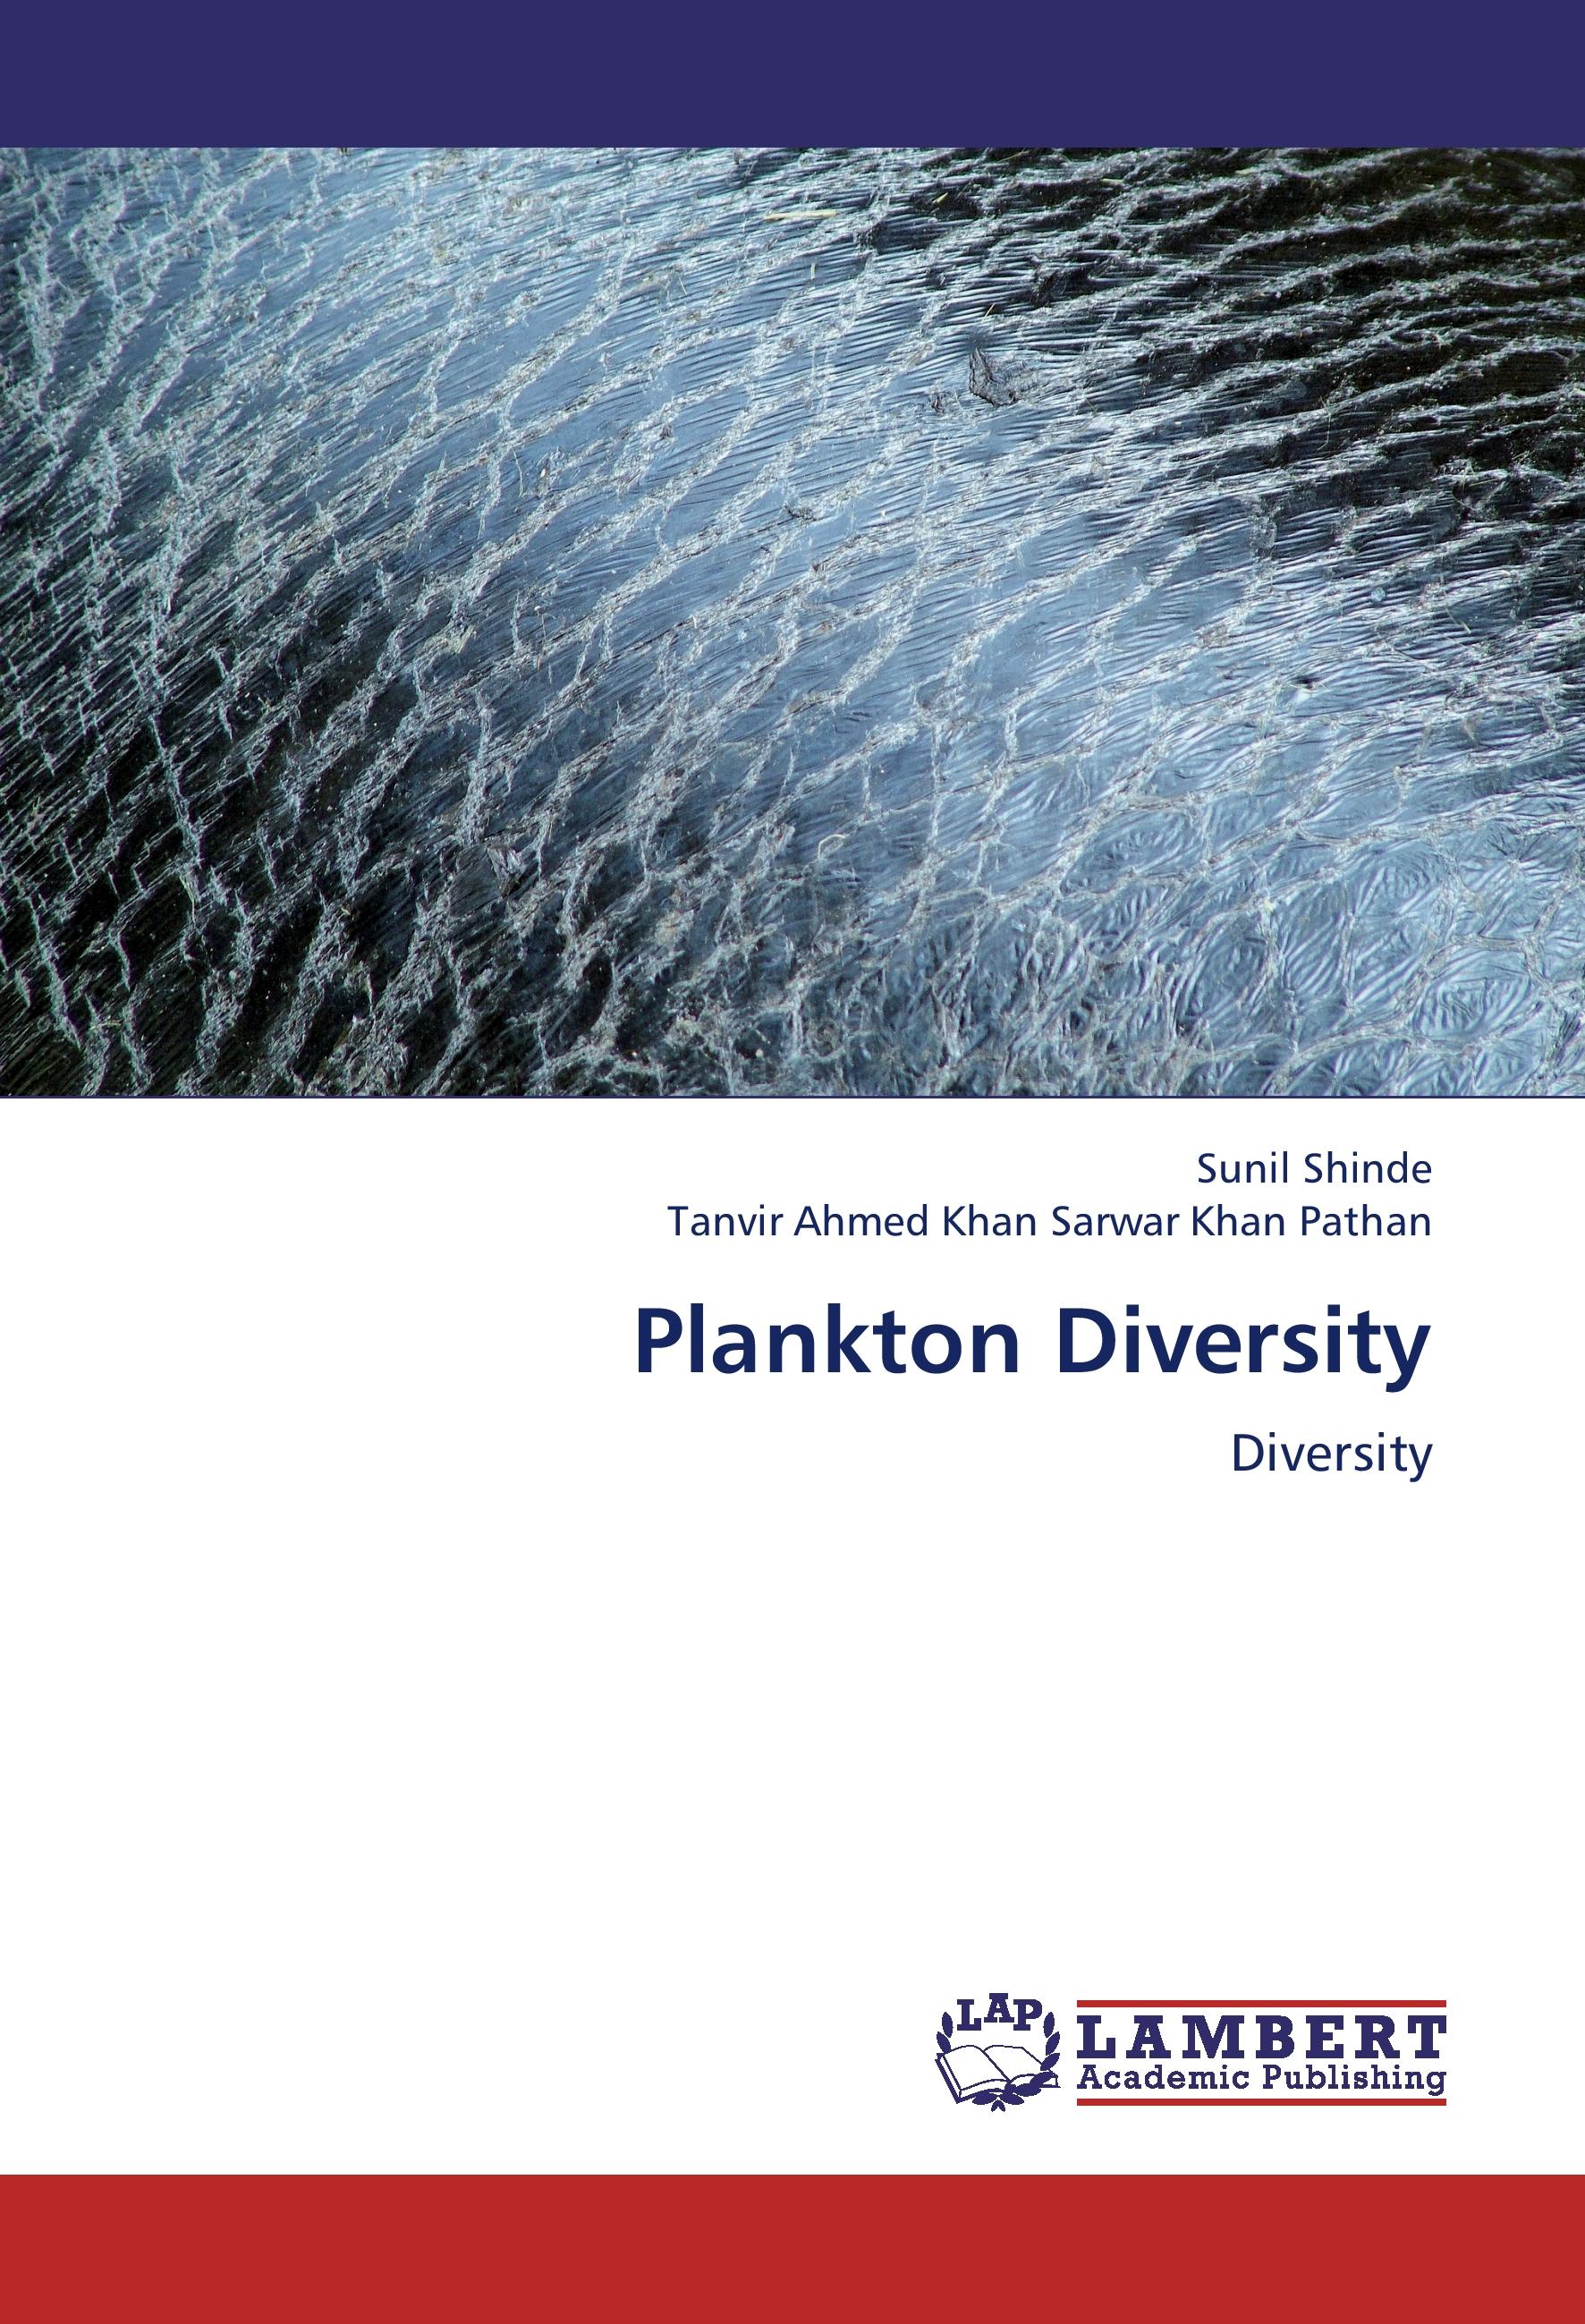 Plankton Diversity - Sunil Shinde Tanvir Ahmed Khan Sarwar Khan Pathan